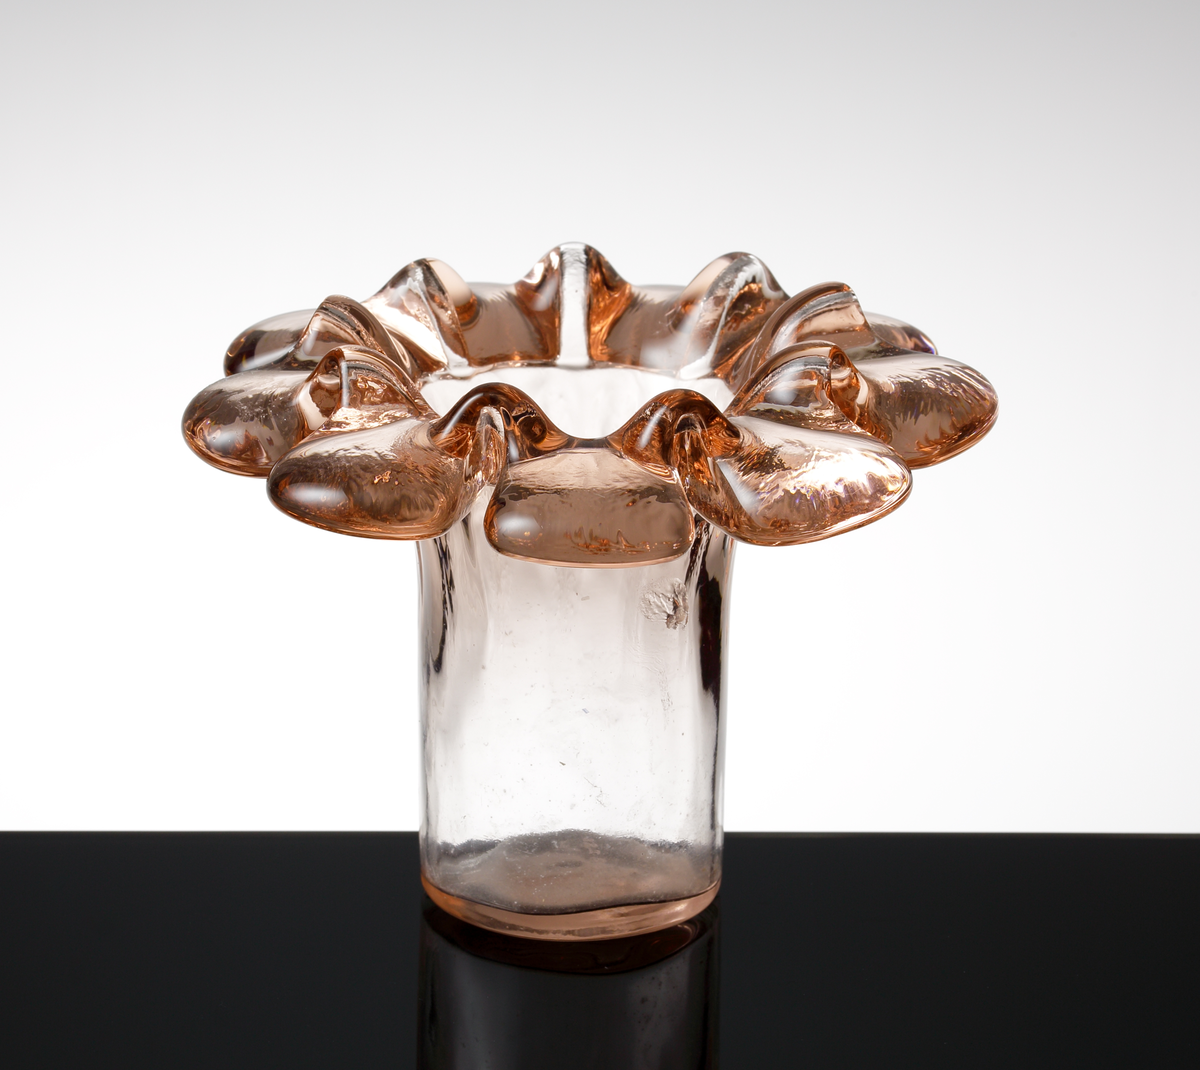 Rosa vas "Krinolin", formgiven av Ann och Göran Wärff.
Vasen är tillverkad i gjut och sjunkteknik. Cylindrisk nederdel, utvikt och veckad kant.